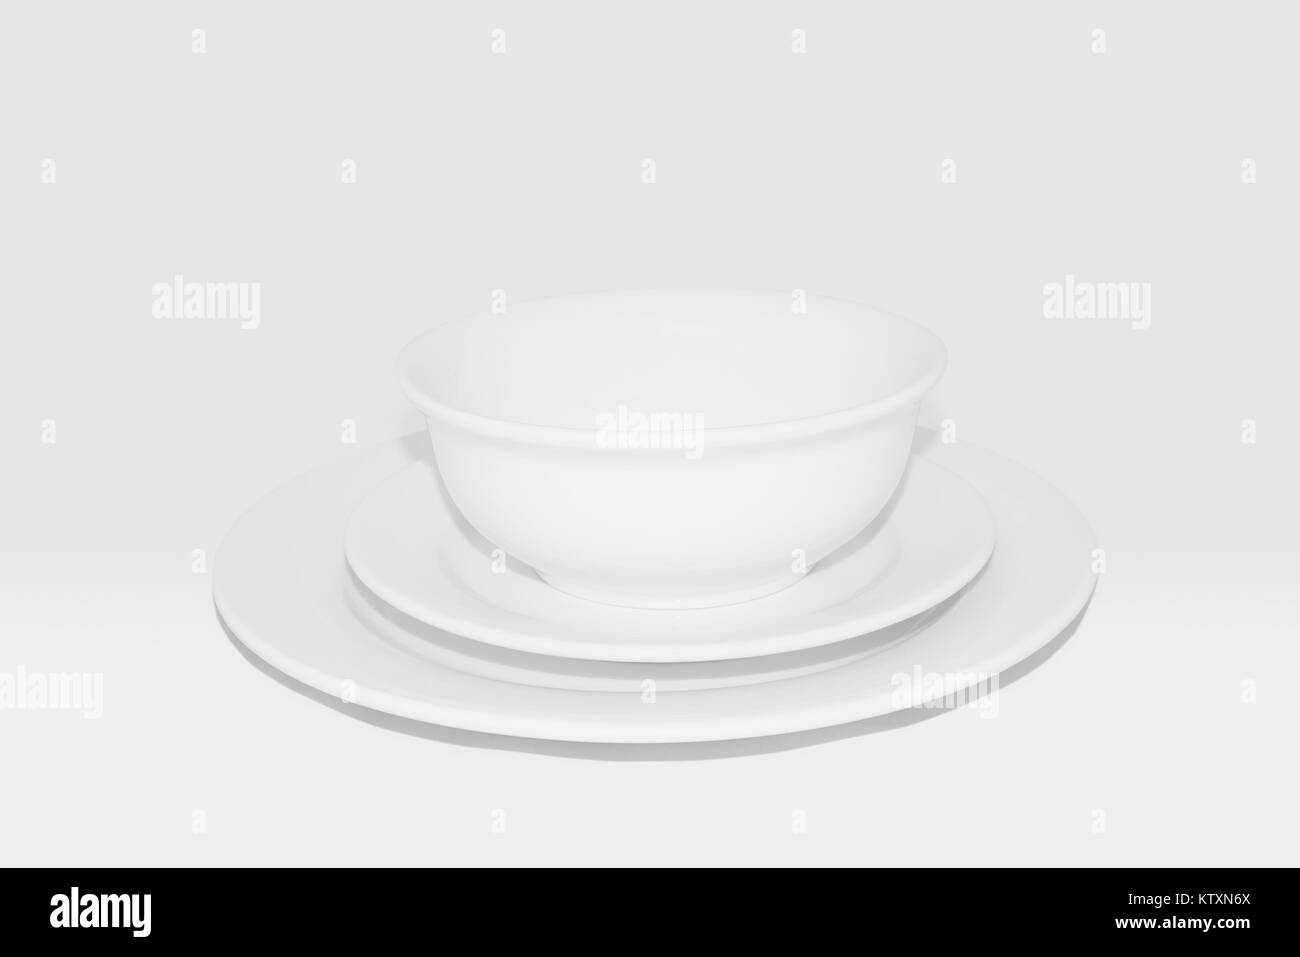 La vaisselle y compris assiette, bol et la plaque latérale : vaisselle blanc contre un fond blanc,100 % gris. Banque D'Images